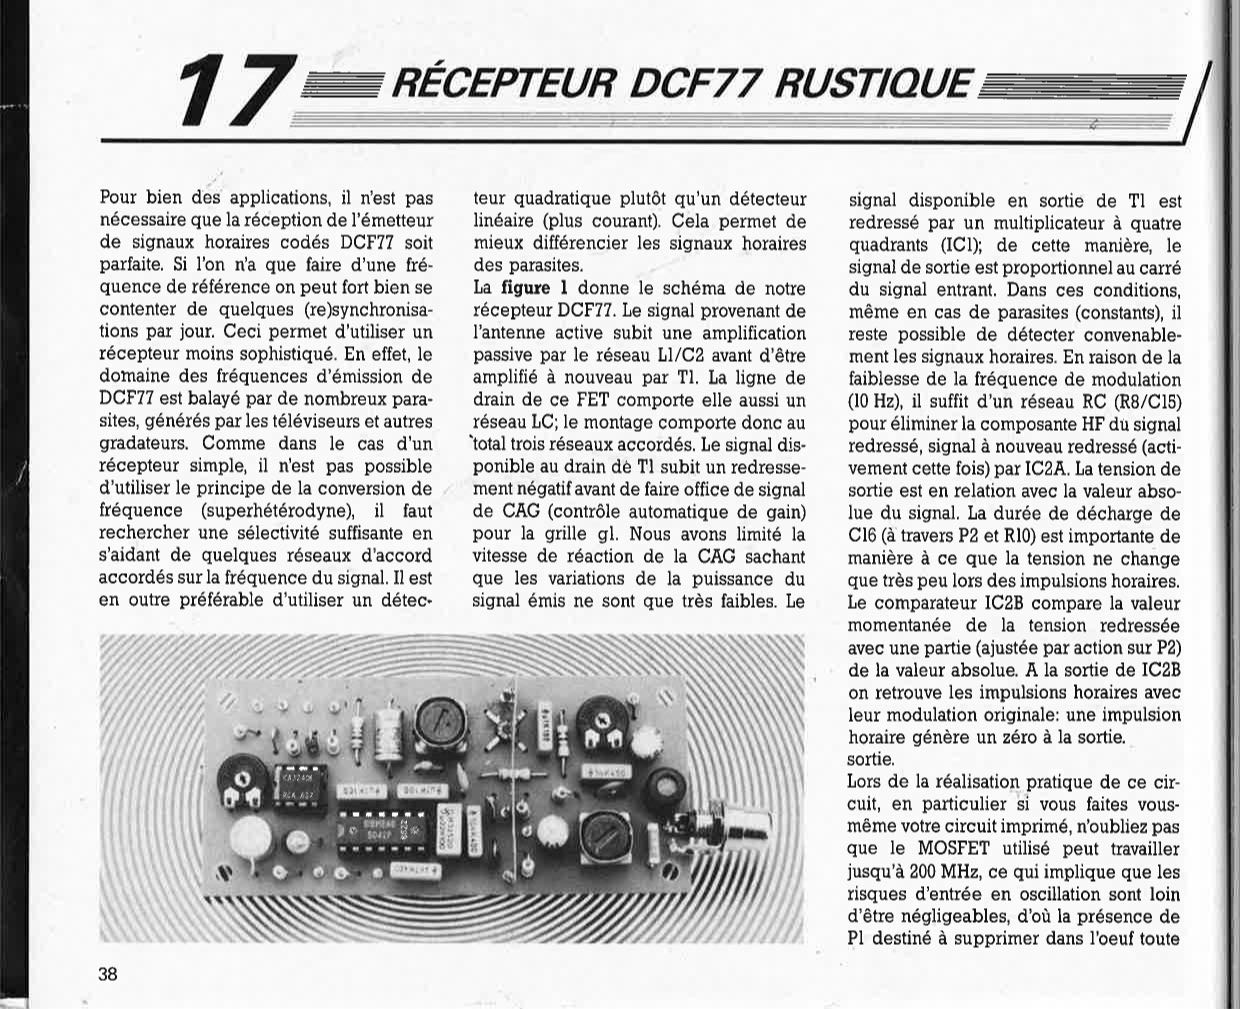 récepteur DCF77 rustique